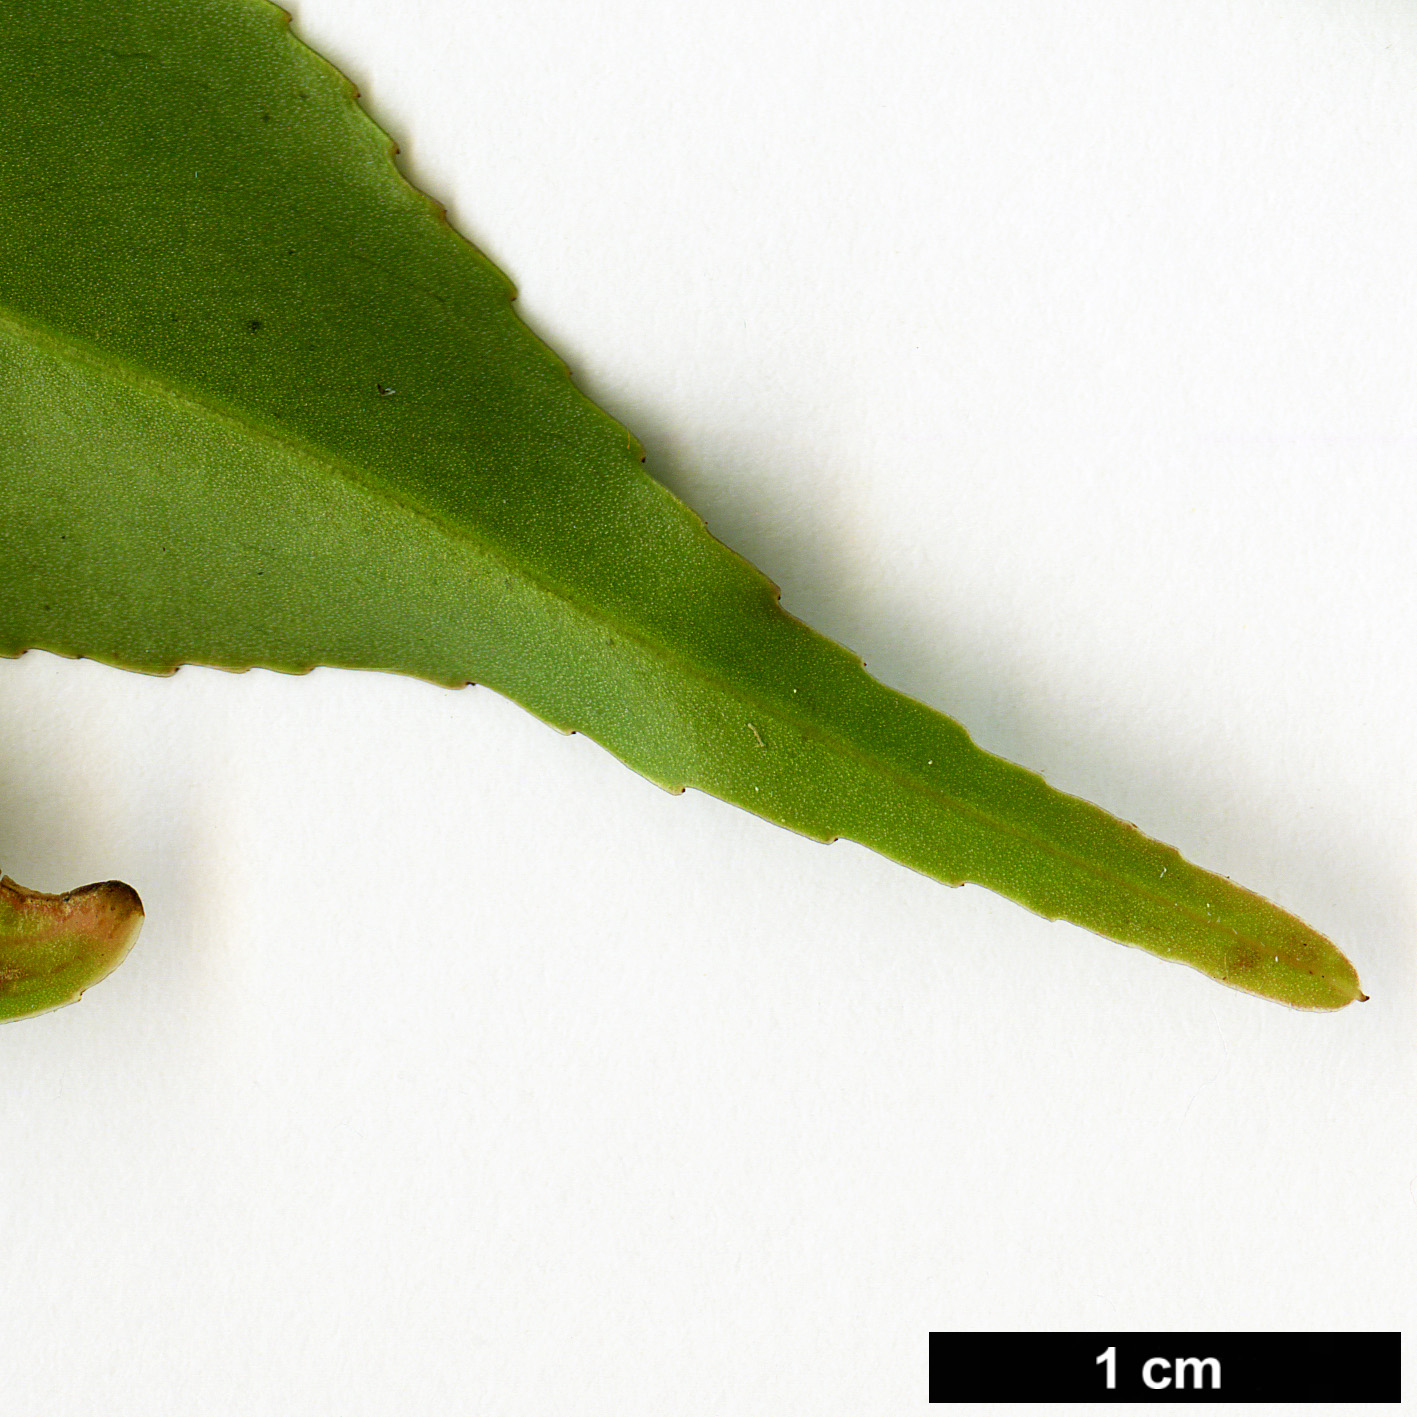 High resolution image: Family: Theaceae - Genus: Camellia - Taxon: cuspidata